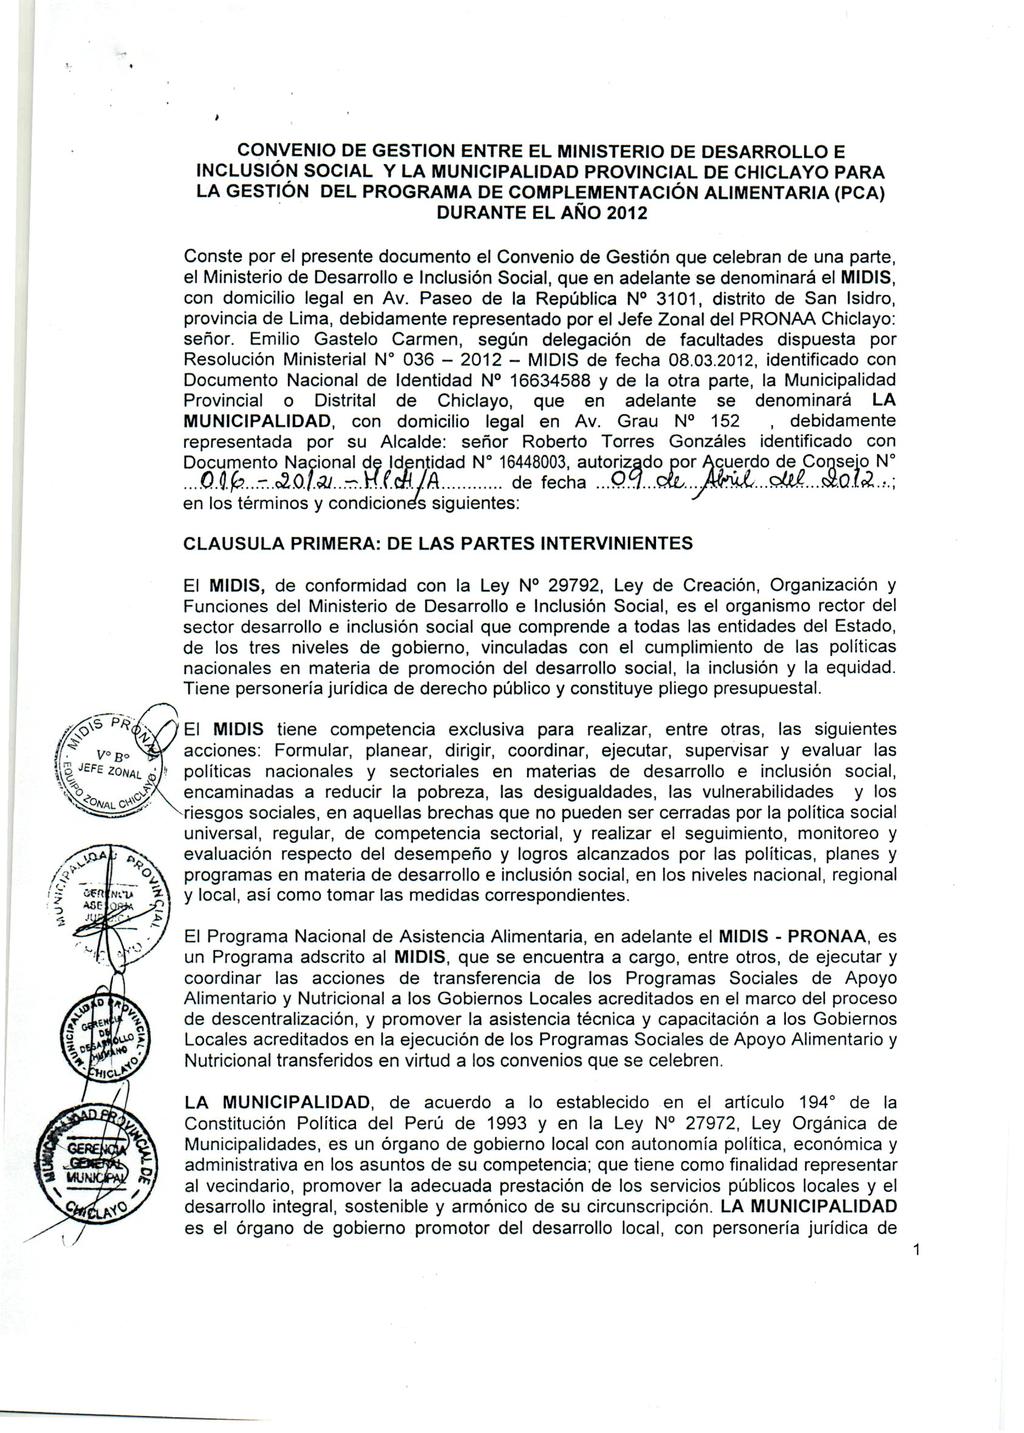 CONVENIO DE GESTION ENTRE EL MINISTERIO DE DESARROLLO E INCLUSiÓN SOCIAL Y LA MUNICIPALIDAD PROVINCIAL DE CHICLAYO PARA LA GESTiÓN DEL PROGRAMA DE COMPLEMENTACIÓN ALlMENTARIA (PCA).